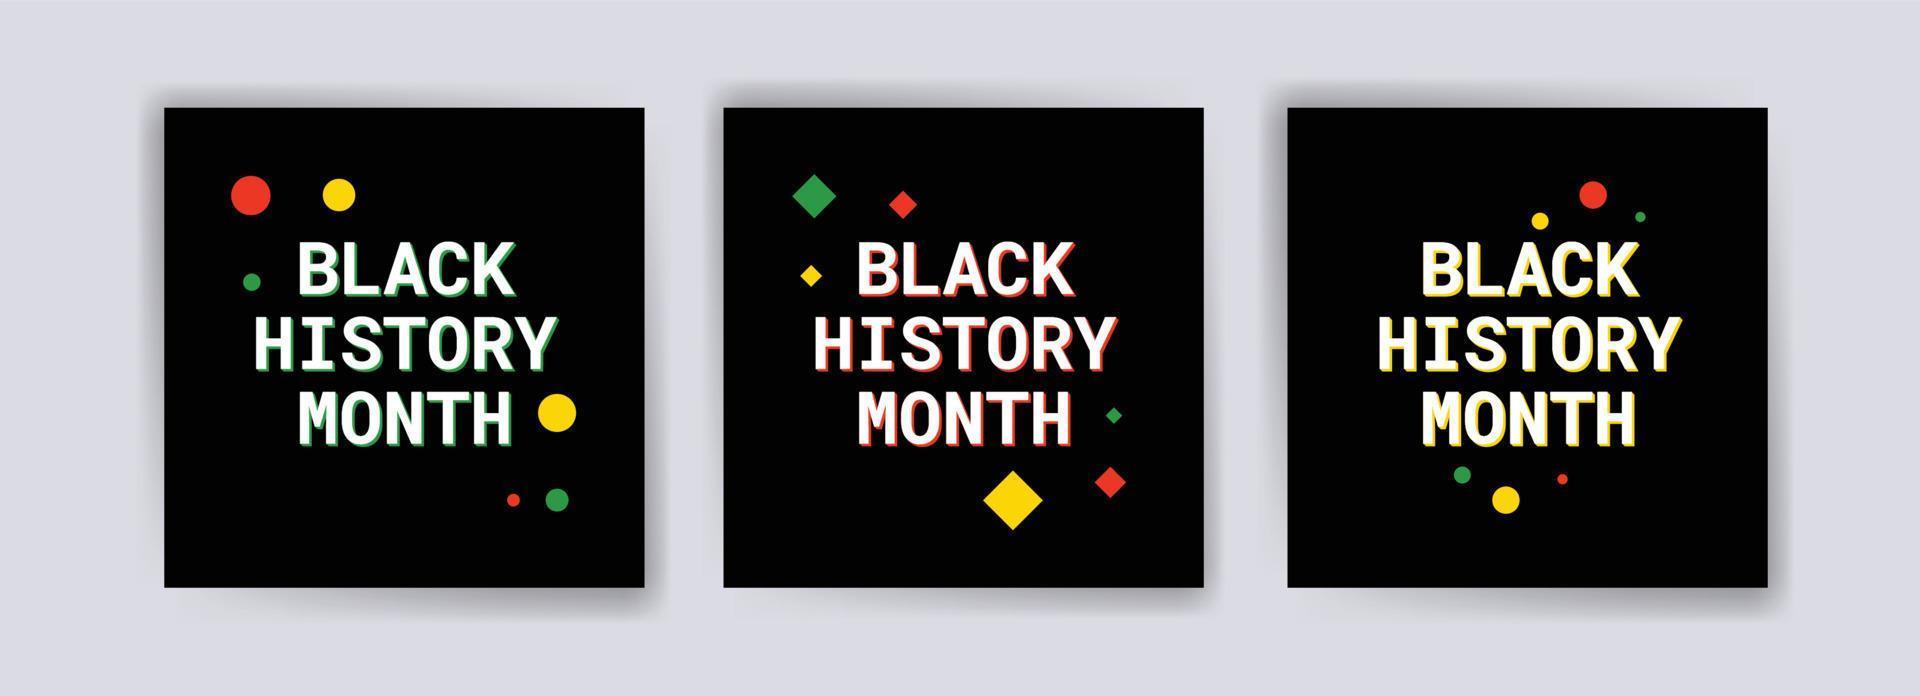 collection de publications sur les réseaux sociaux du mois de l'histoire des Noirs. célébrant le mois de l'histoire des Noirs. vecteur